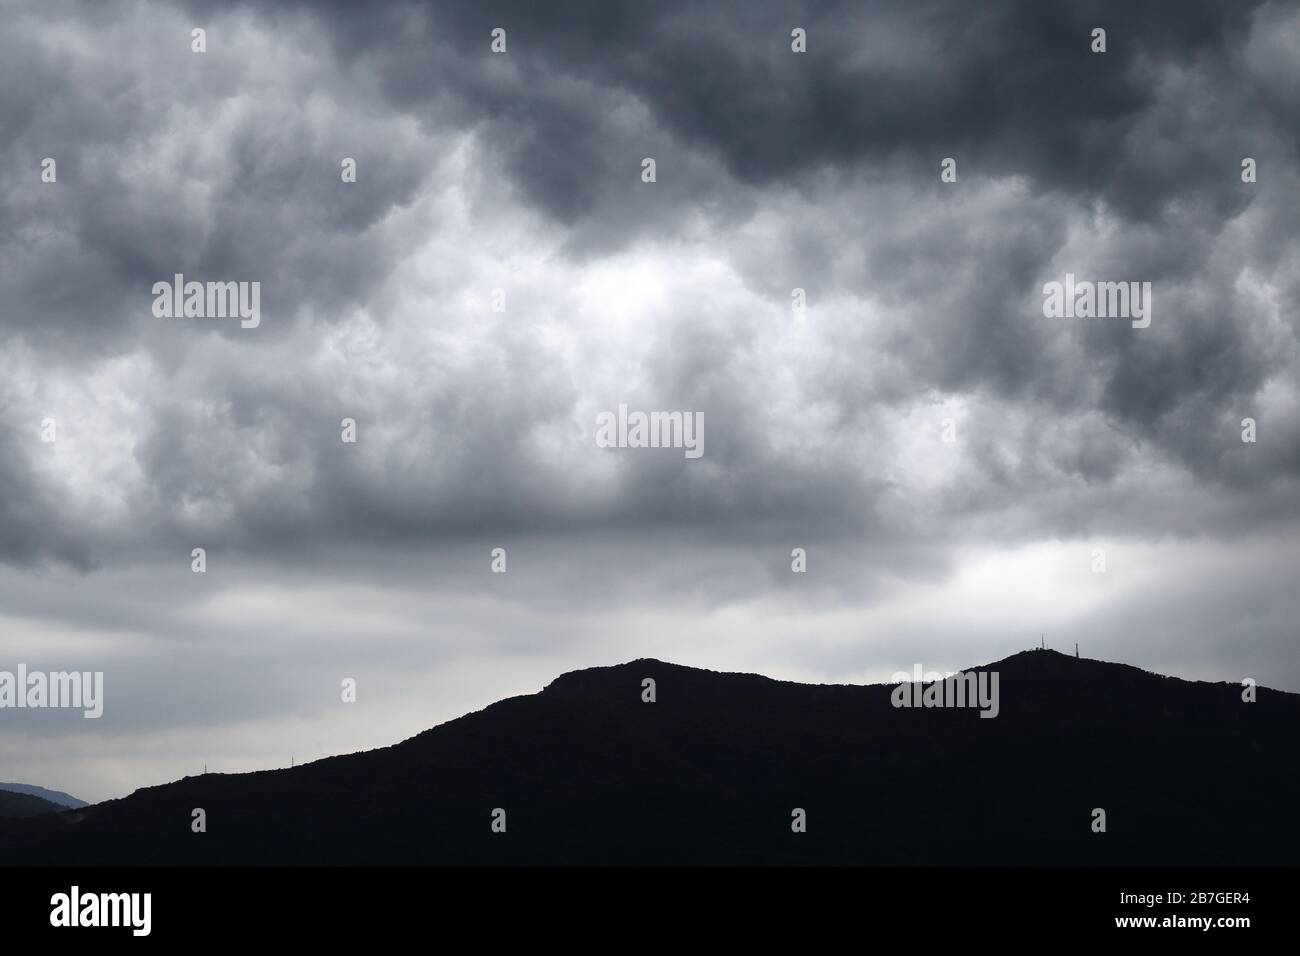 Panorama in schwarz-weiß mit bewölktem Himmel und Berg Stockfoto